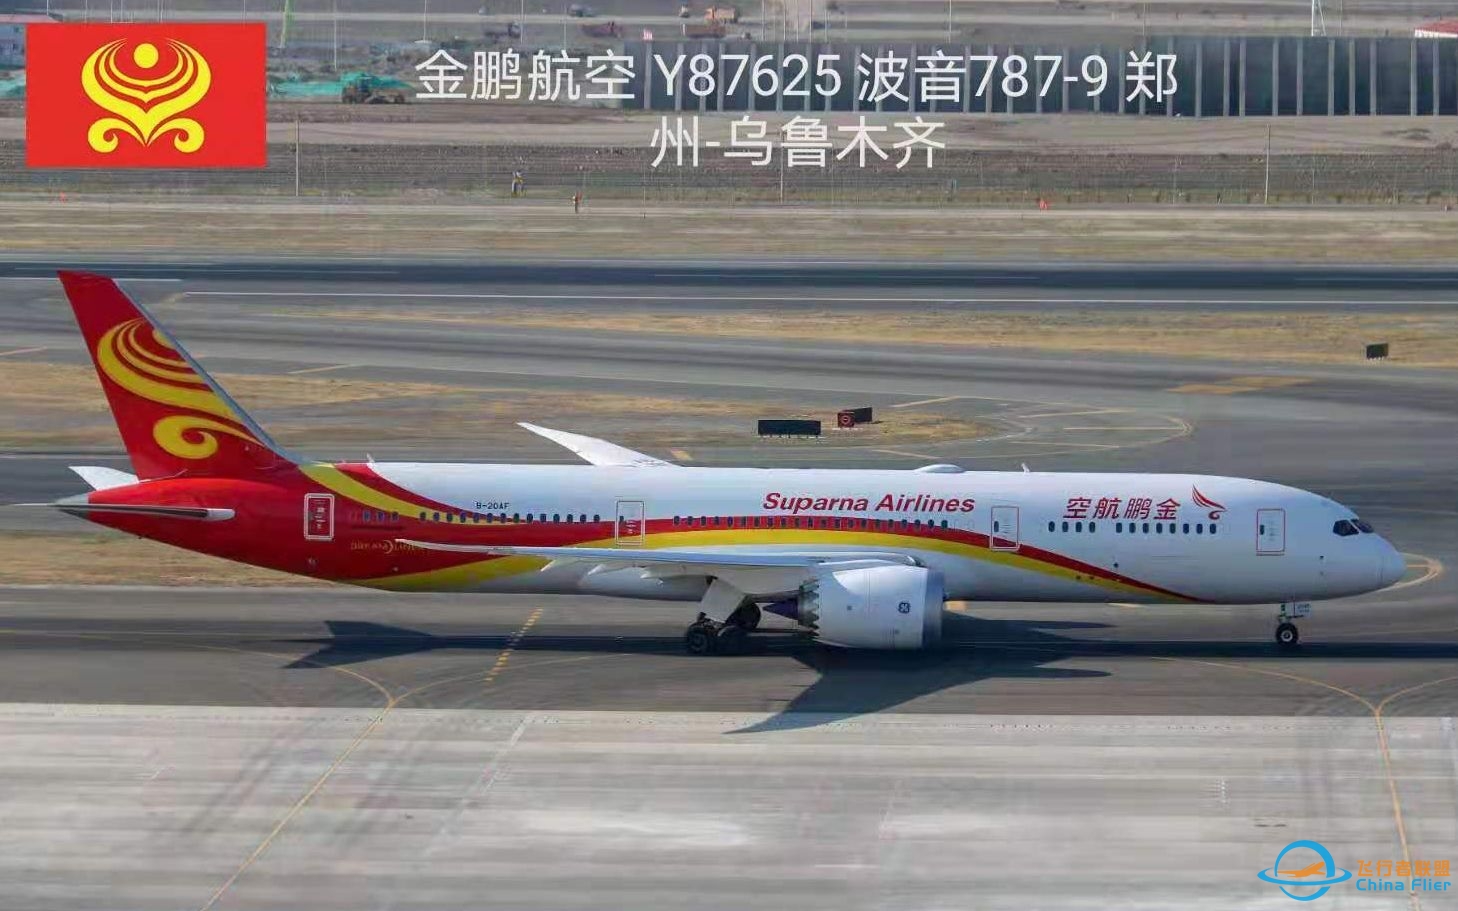 【金鹏航空】波音787-9 B-20AF Y87625 郑州-乌鲁木齐 公务舱飞行体验·左引擎视角-8877 